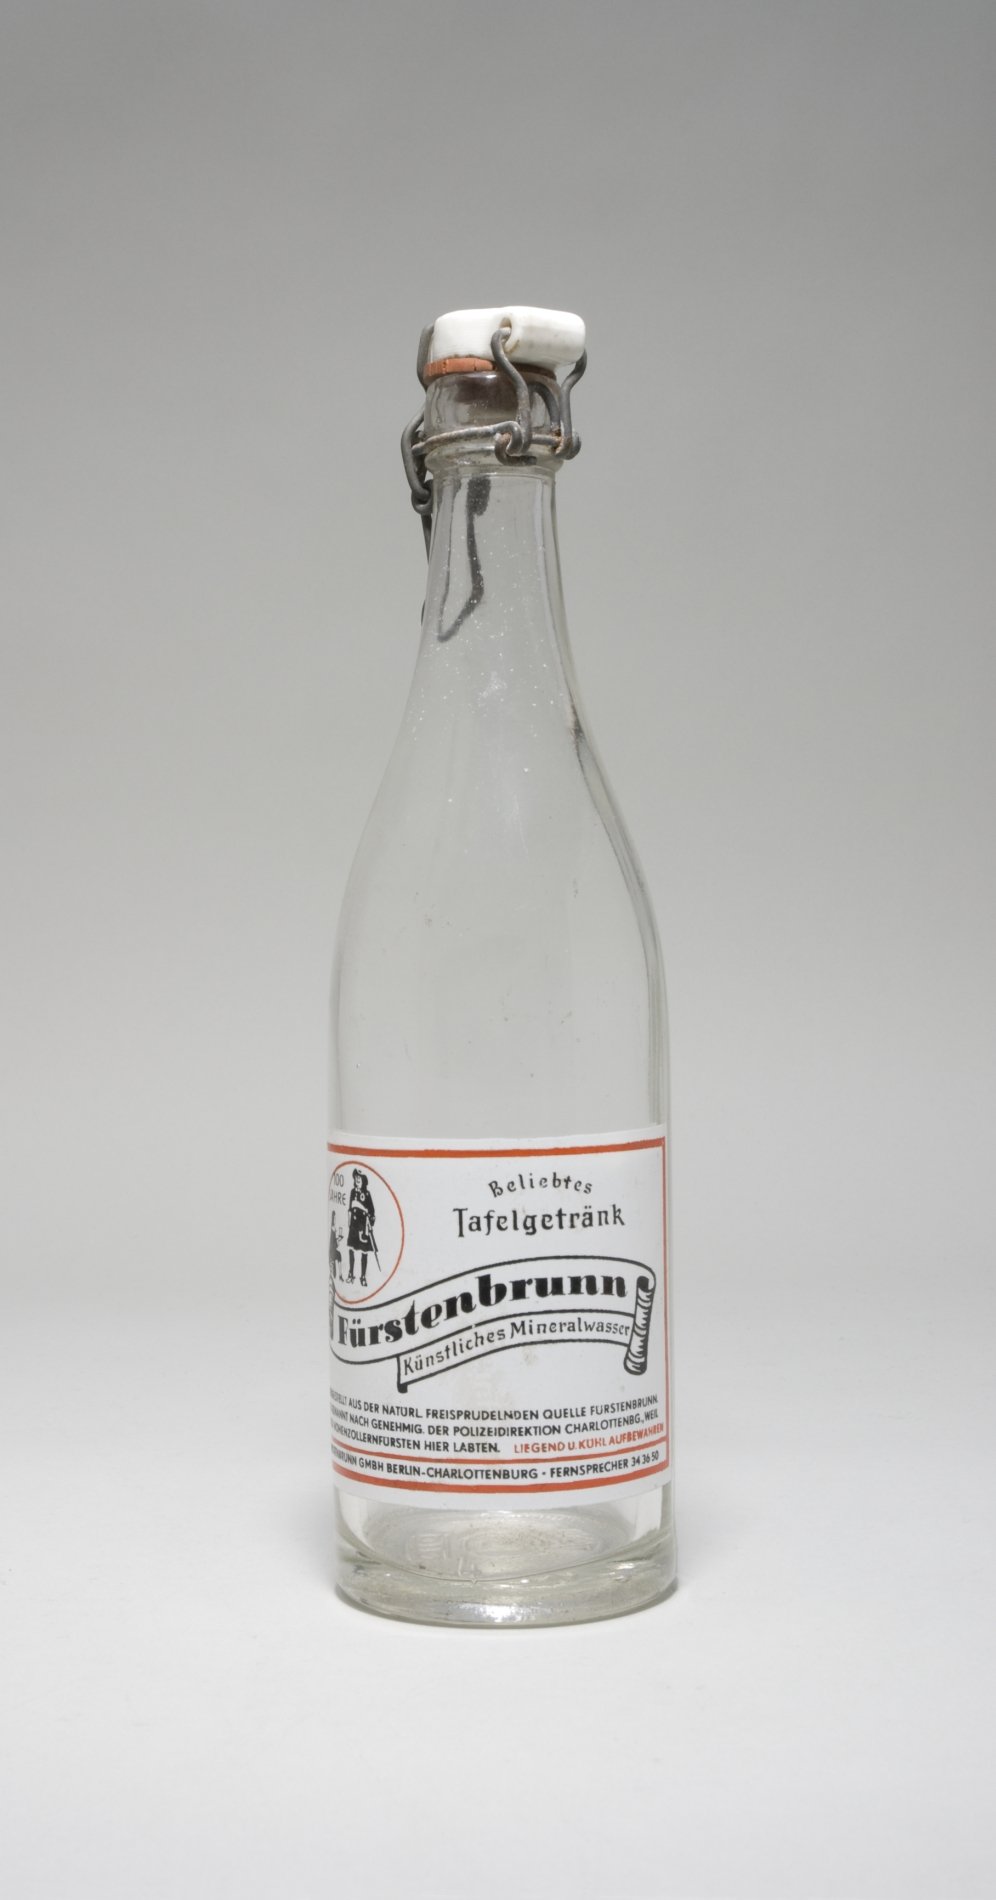 Flasche "Fürstenbrunn - Kurfürstliches Mineralwasser", mit Bügelverschluss (Stiftung Domäne Dahlem - Landgut und Museum, Weiternutzung nur mit Genehmigung des Museums CC BY-NC-SA)